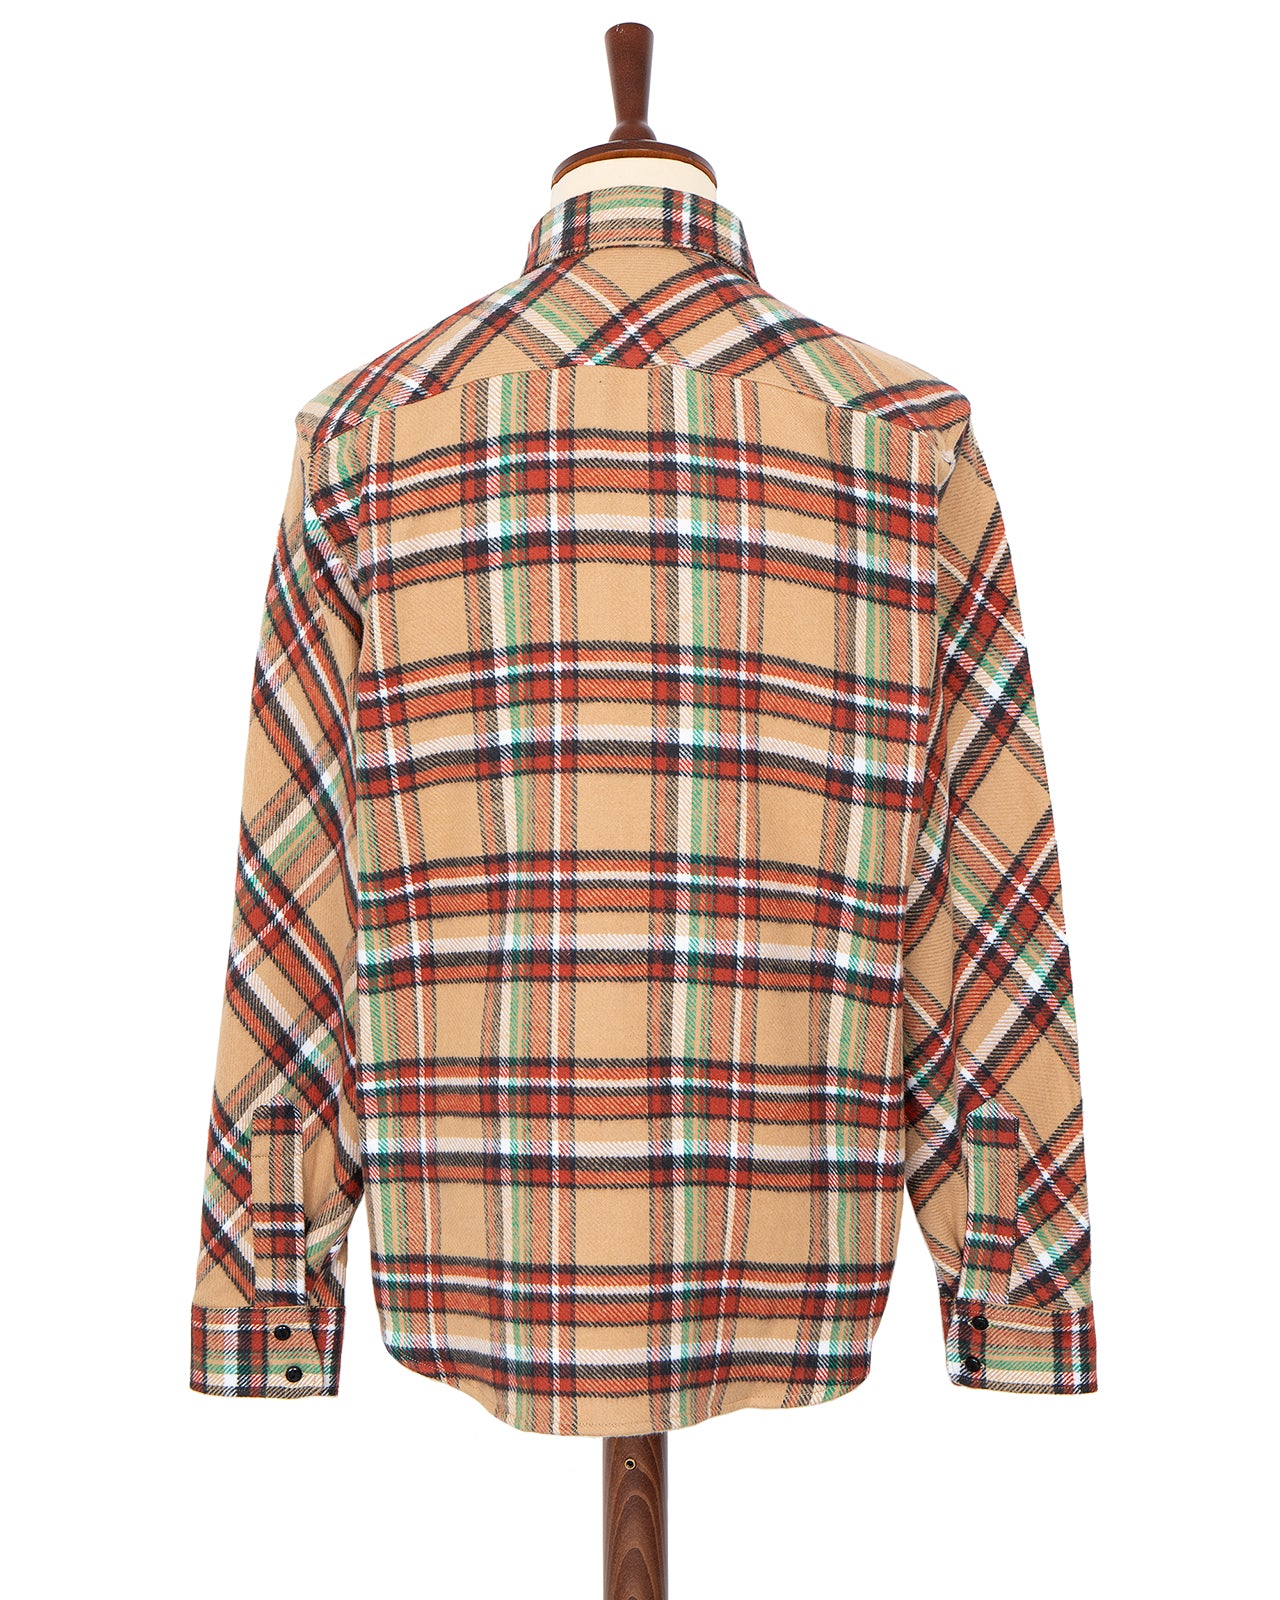 Indigofera Bryson Shirt, Flannel Check, Beige / Red / White / Green